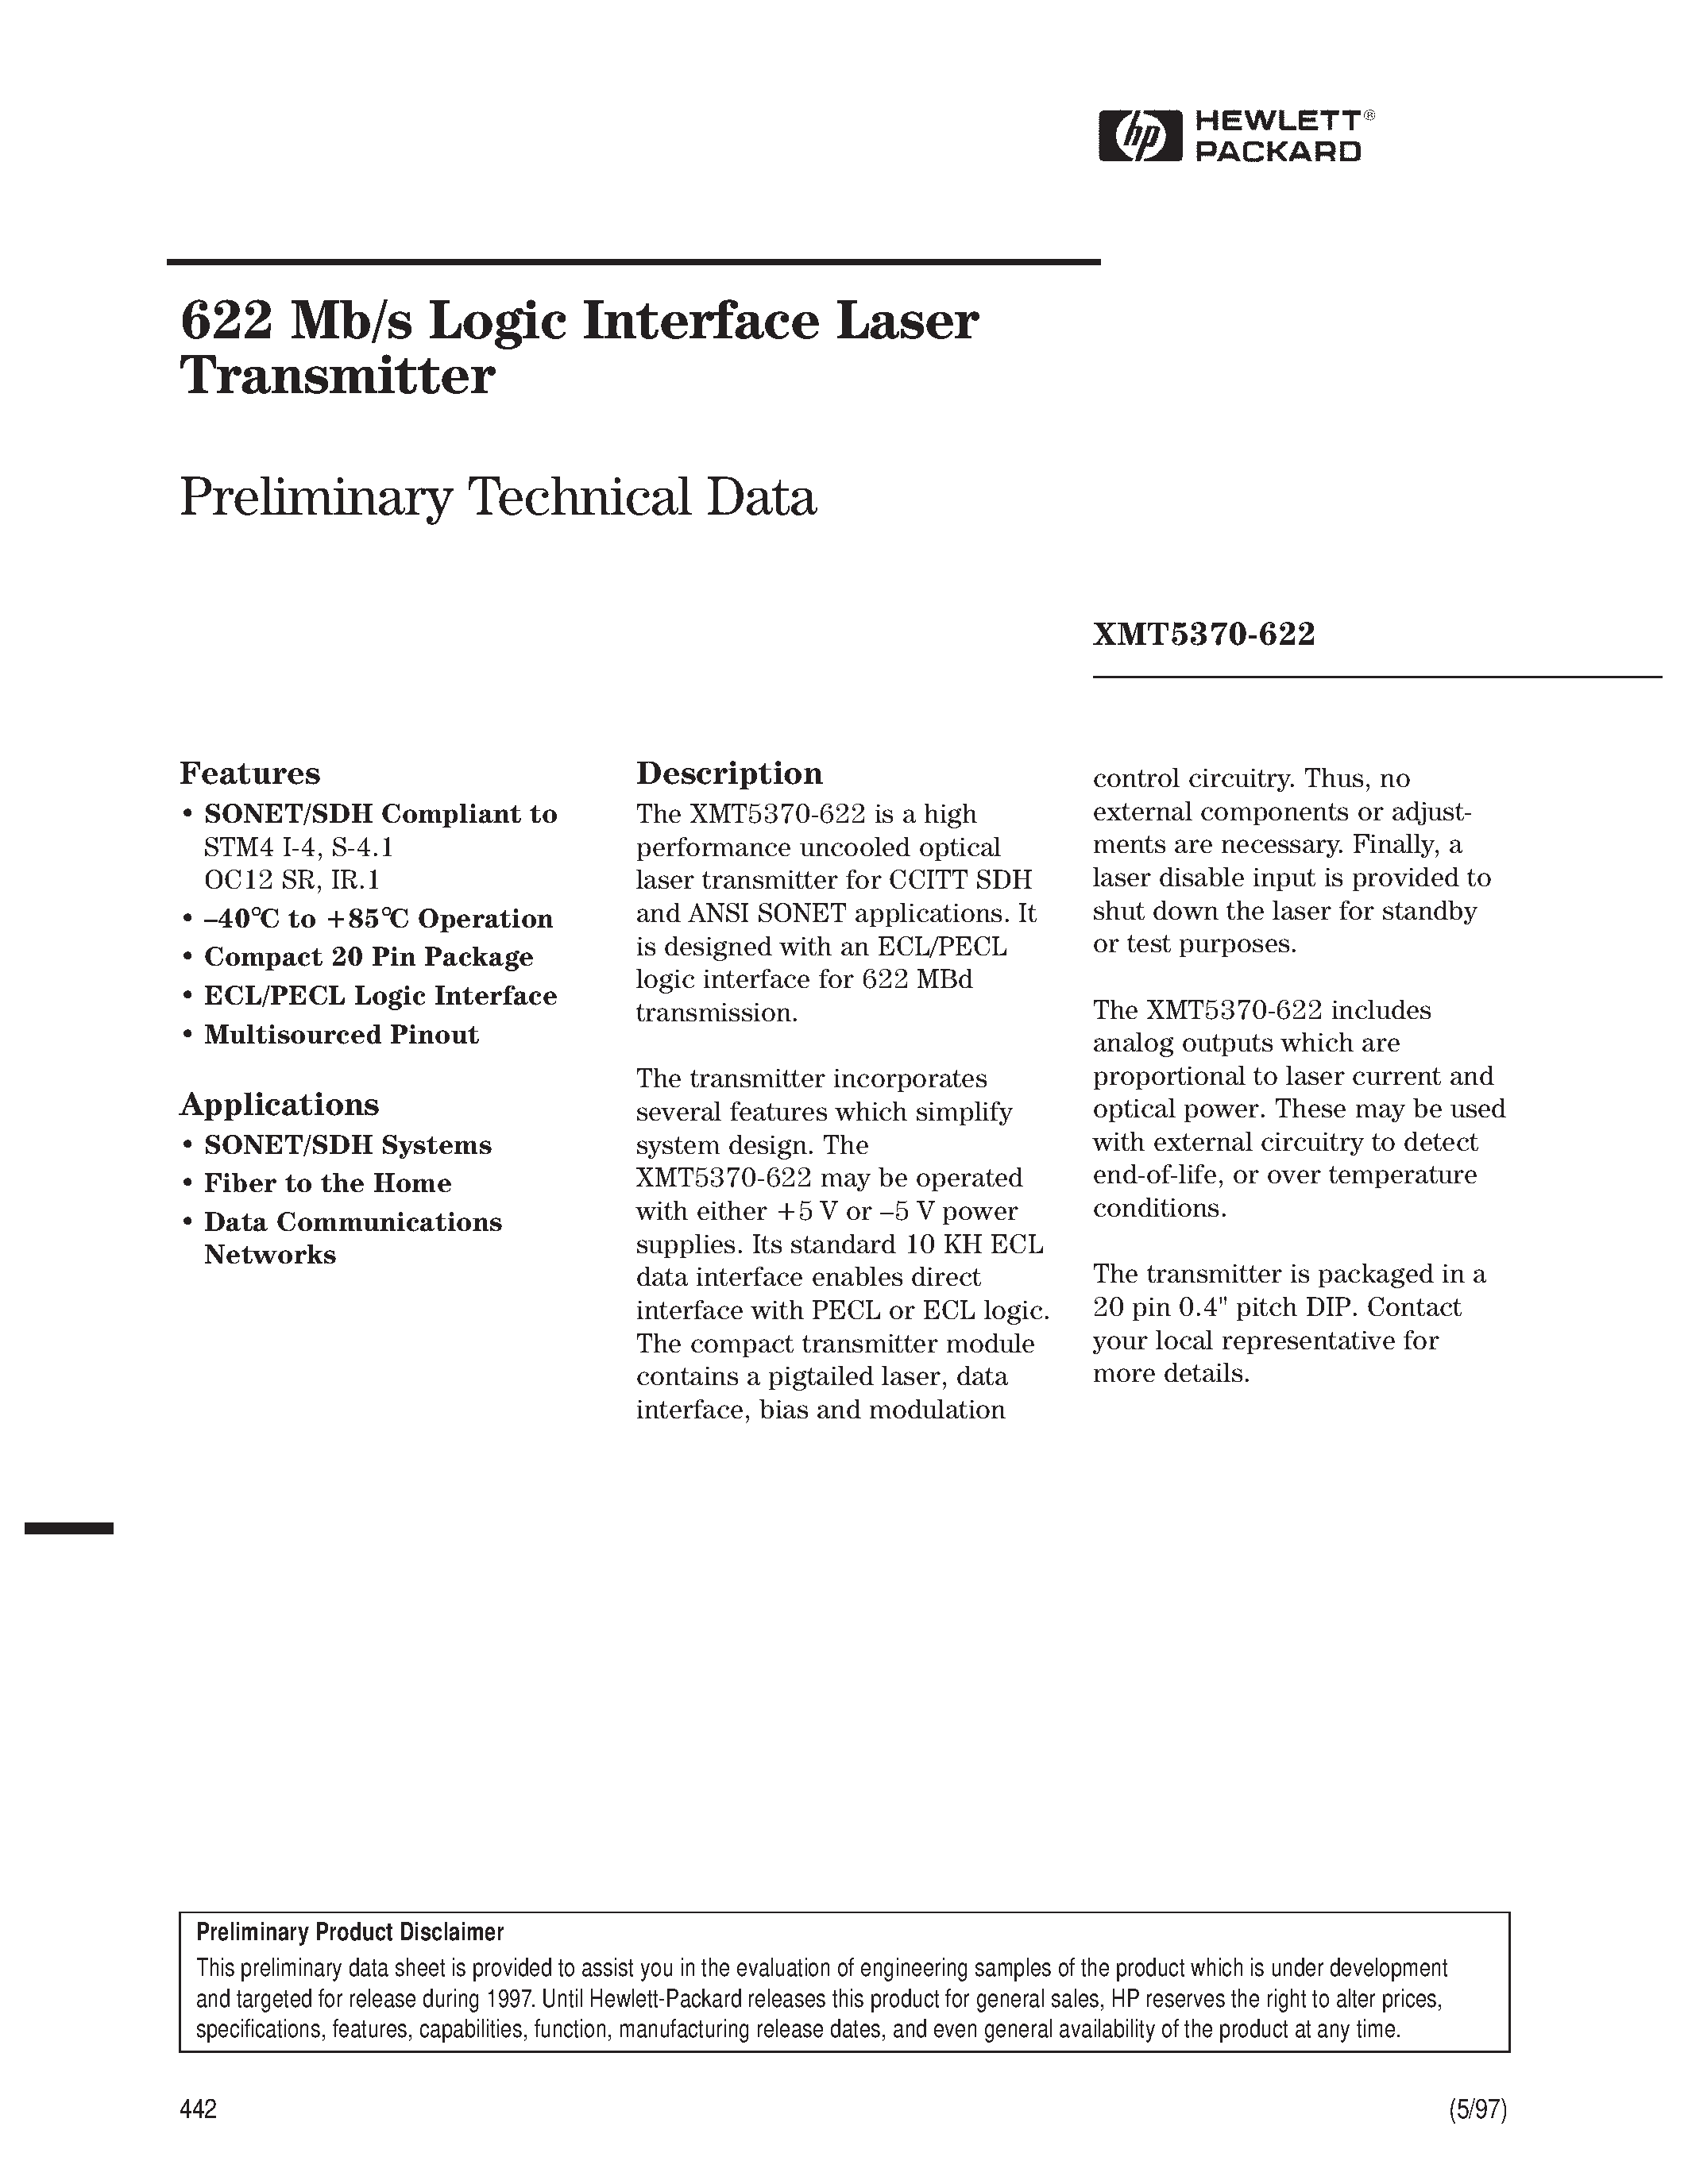 Datasheet XMT5360B-155-SC - 622 Mb/s Logic Interface Laser Transmitter page 1